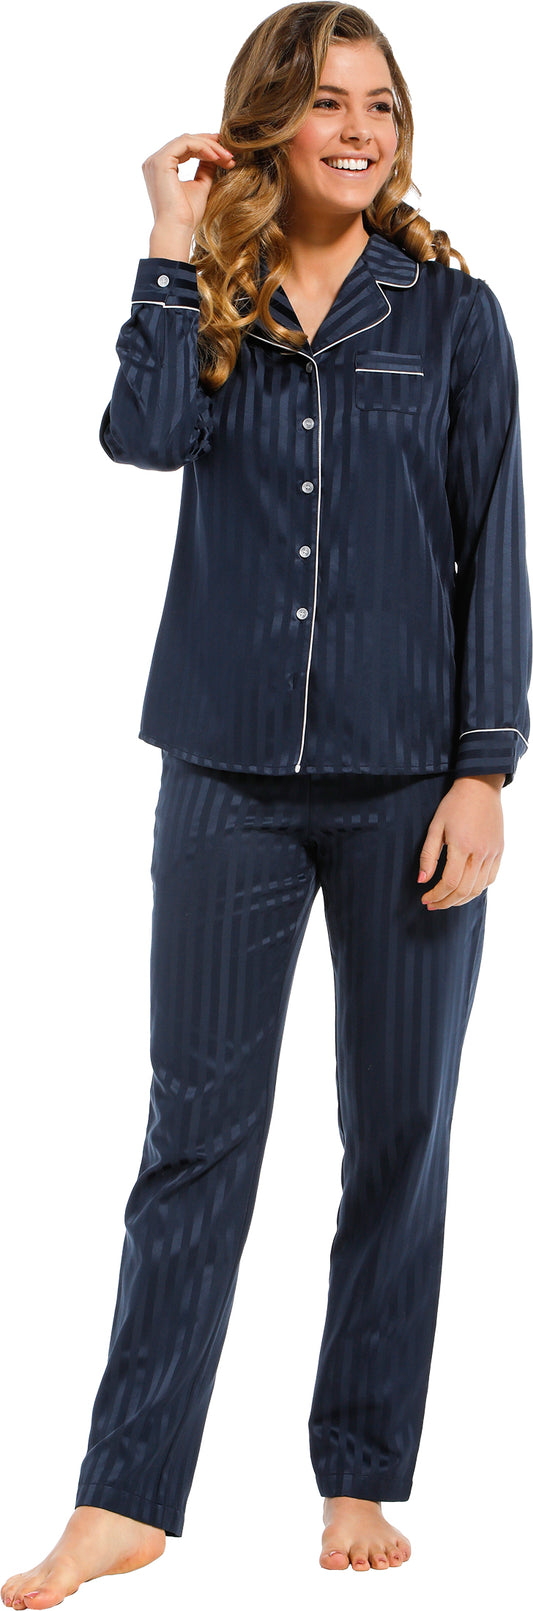 Pastunette de luxe Satijnen Pyjama doorknoop - 25212-310-6 - donkerblauw